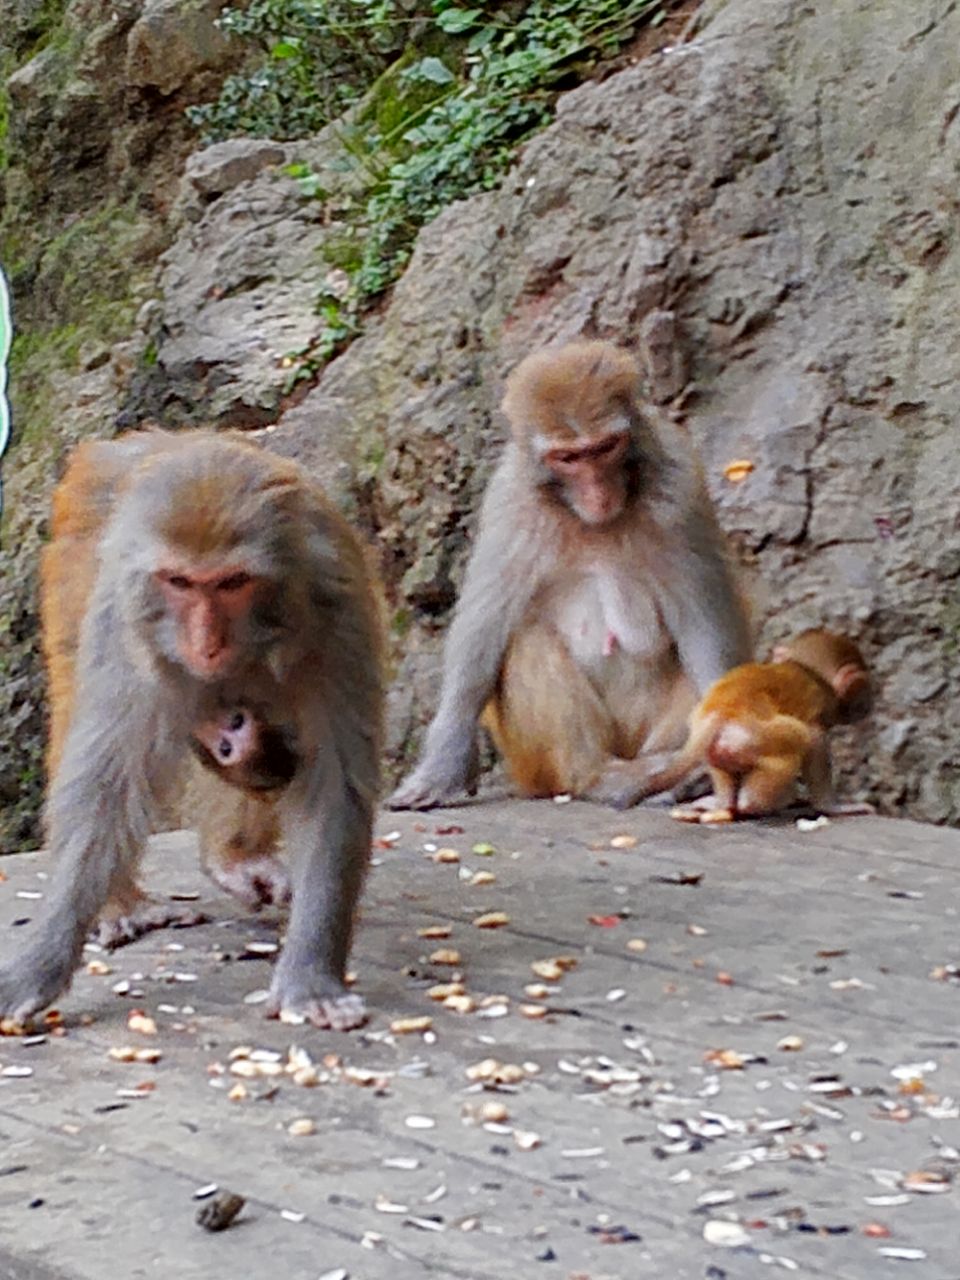 三岭湾猕猴观赏园